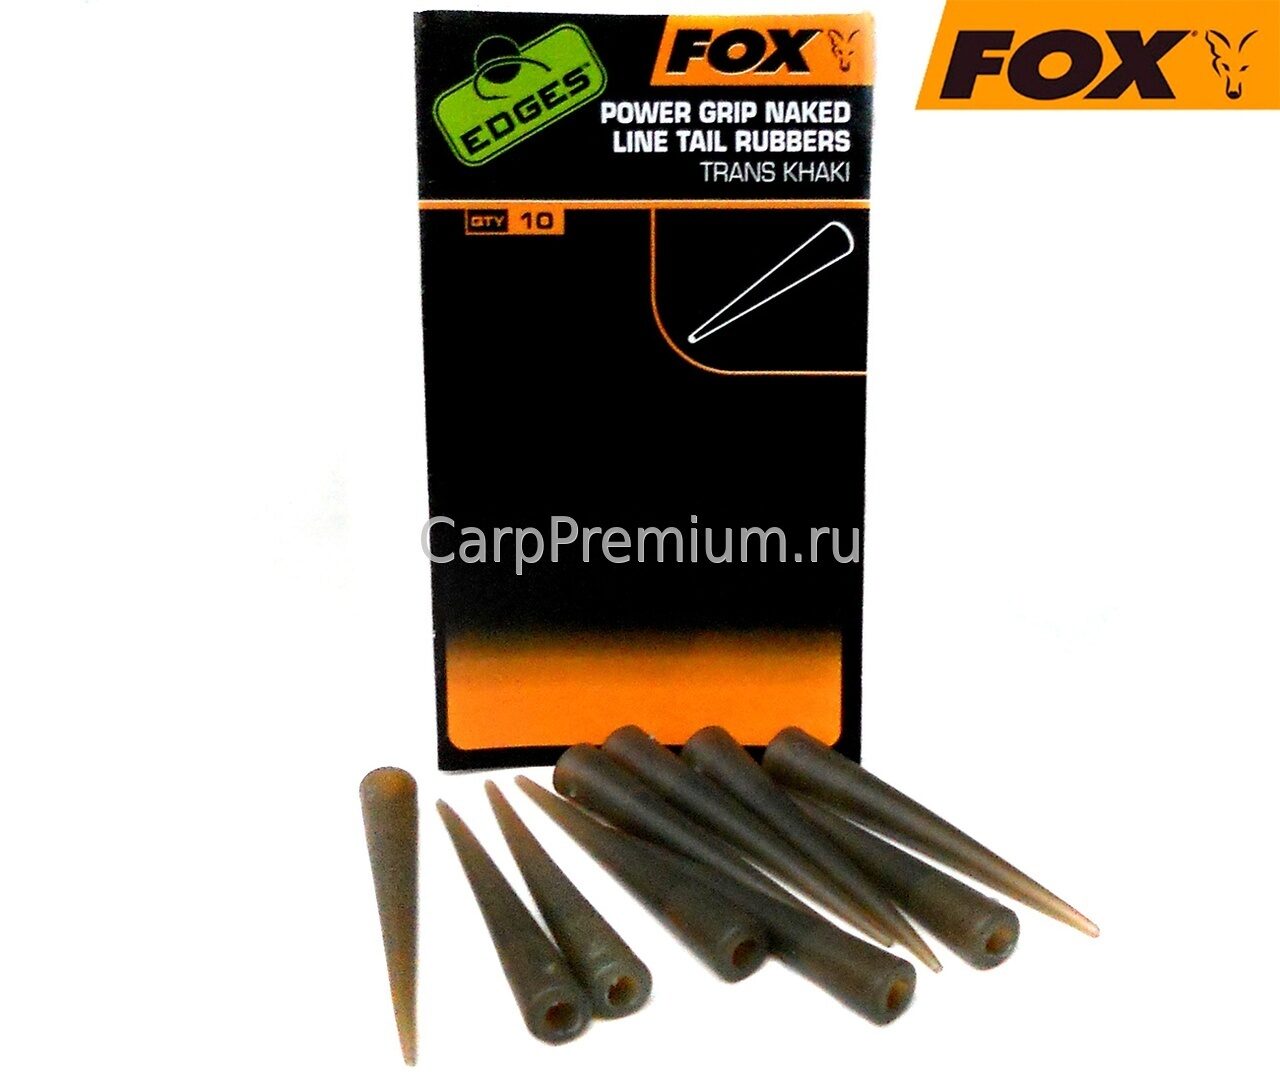 Конус усиленный для клипсы Fox (Фокс) - EDGES Power Grip Naked line Tail Rubbers, Размер 7, 10 шт